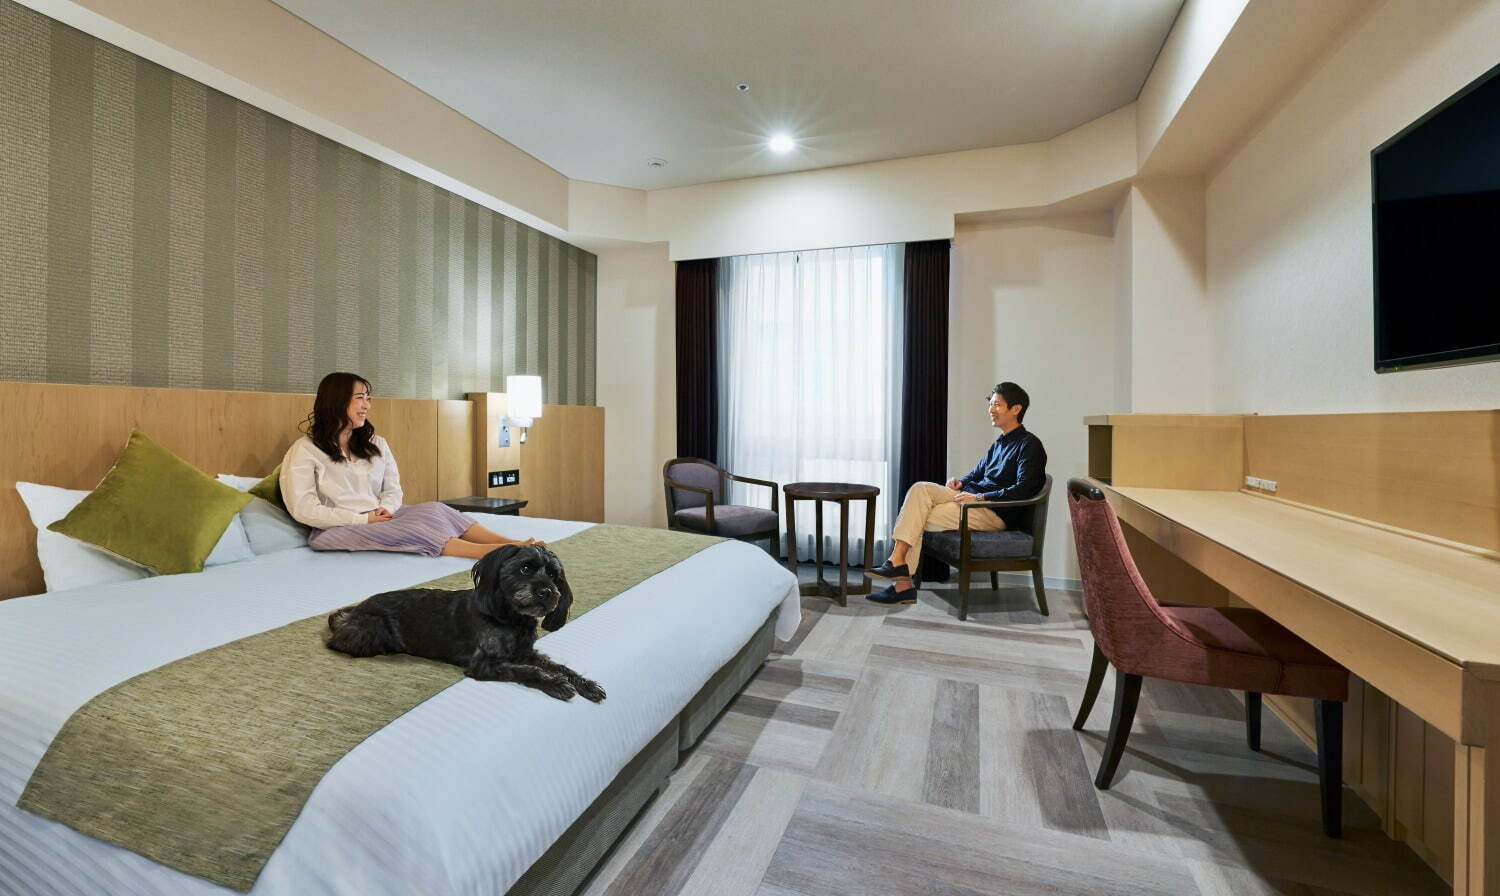 愛犬と人が喜ぶホテル イヌモ 芝公園 宿泊代に預かりサービス シャンプー込み ペット連れで東京観光へ ファッションプレス